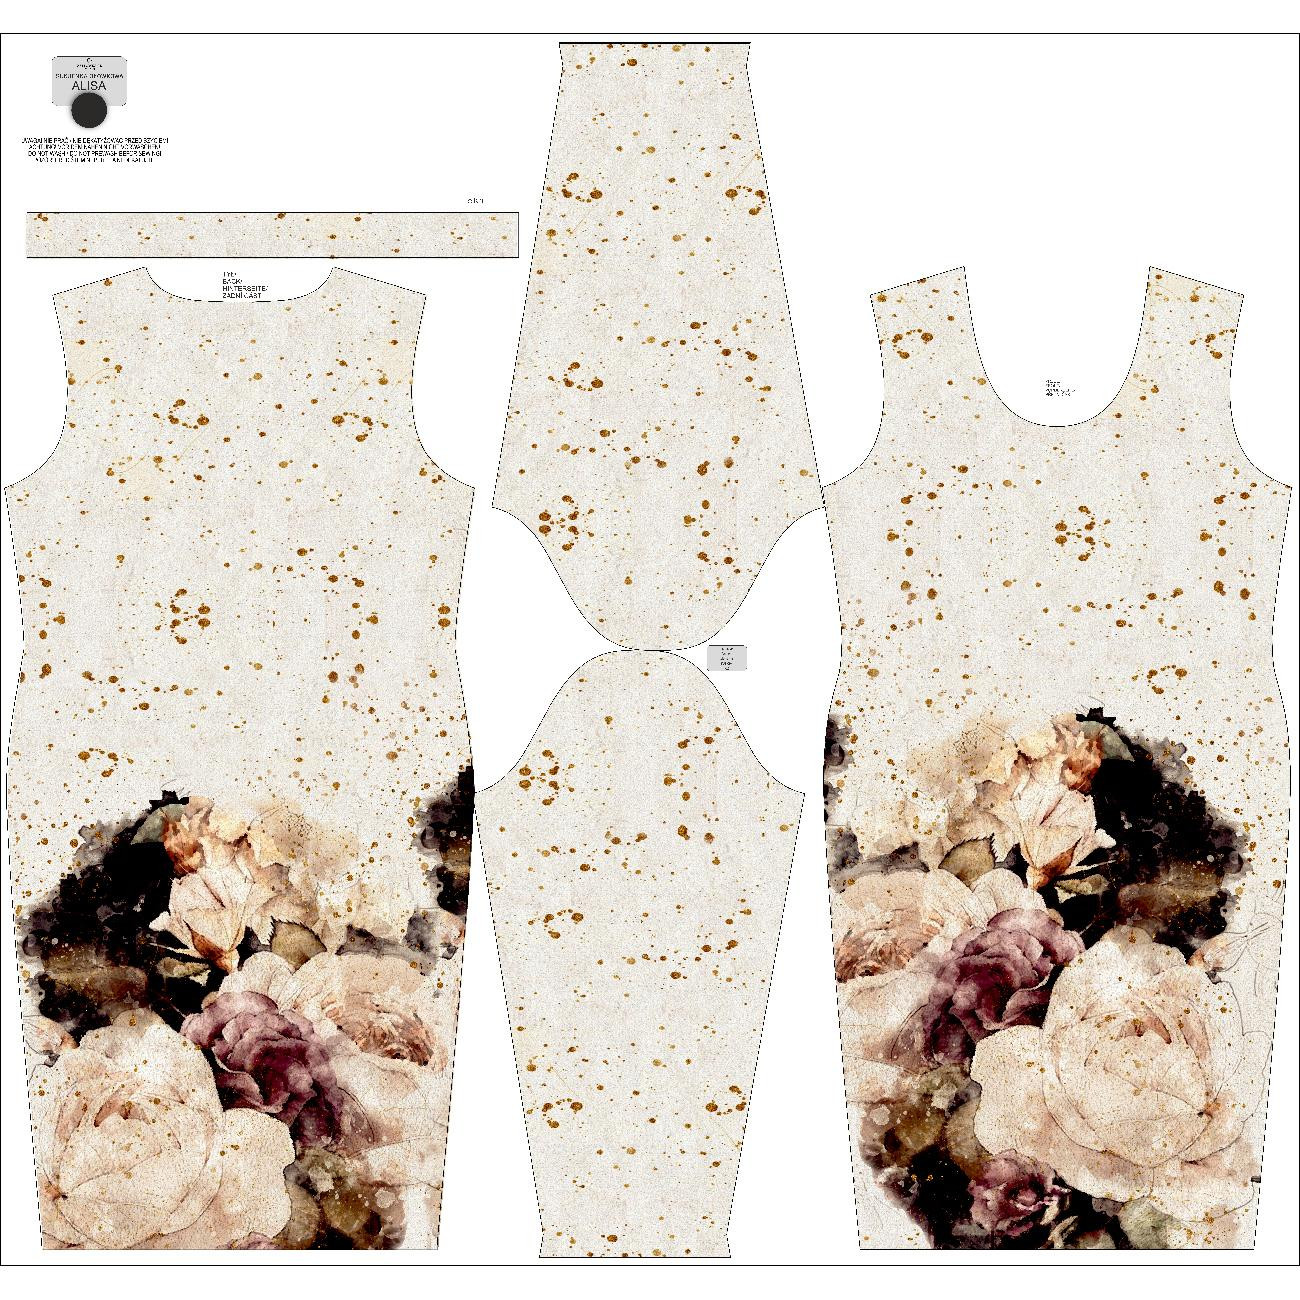 Tužkové šaty (ALISA) - WATERCOLOR FLOWERS VZ. 4 - Sada šití